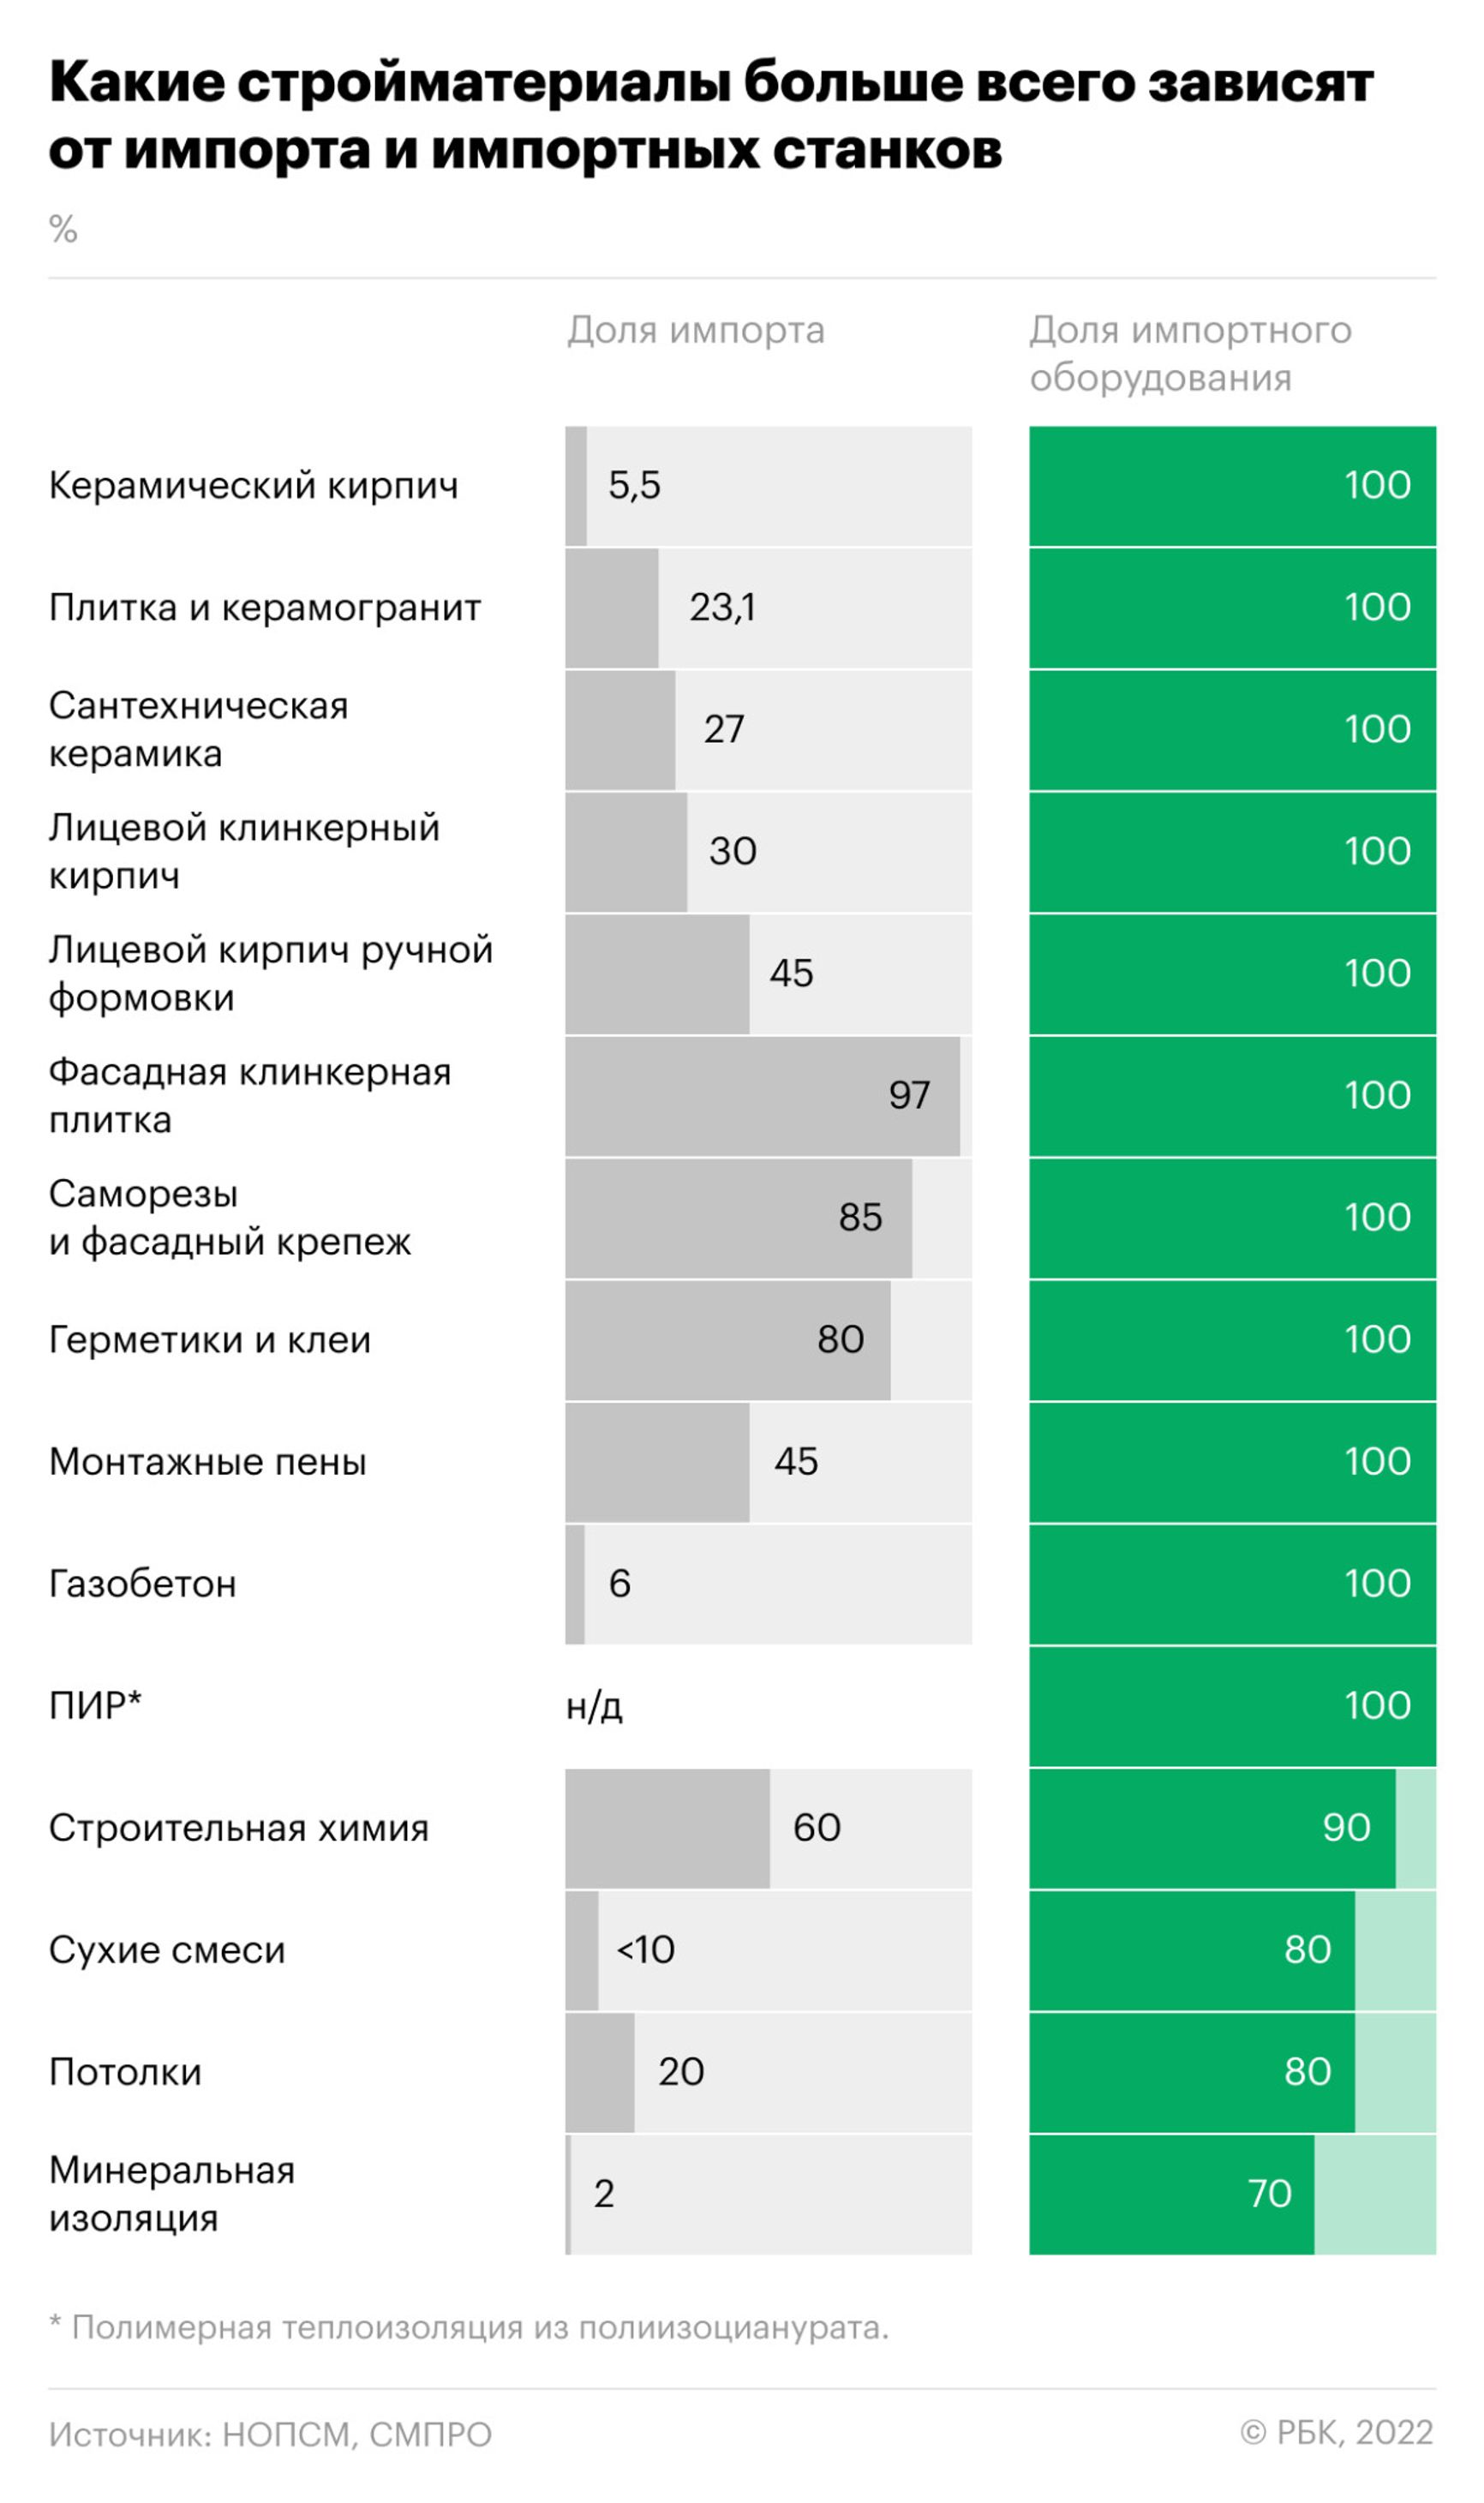 Производство половины стройматериалов в России на 70% зависит от импортного оборудования — исследование